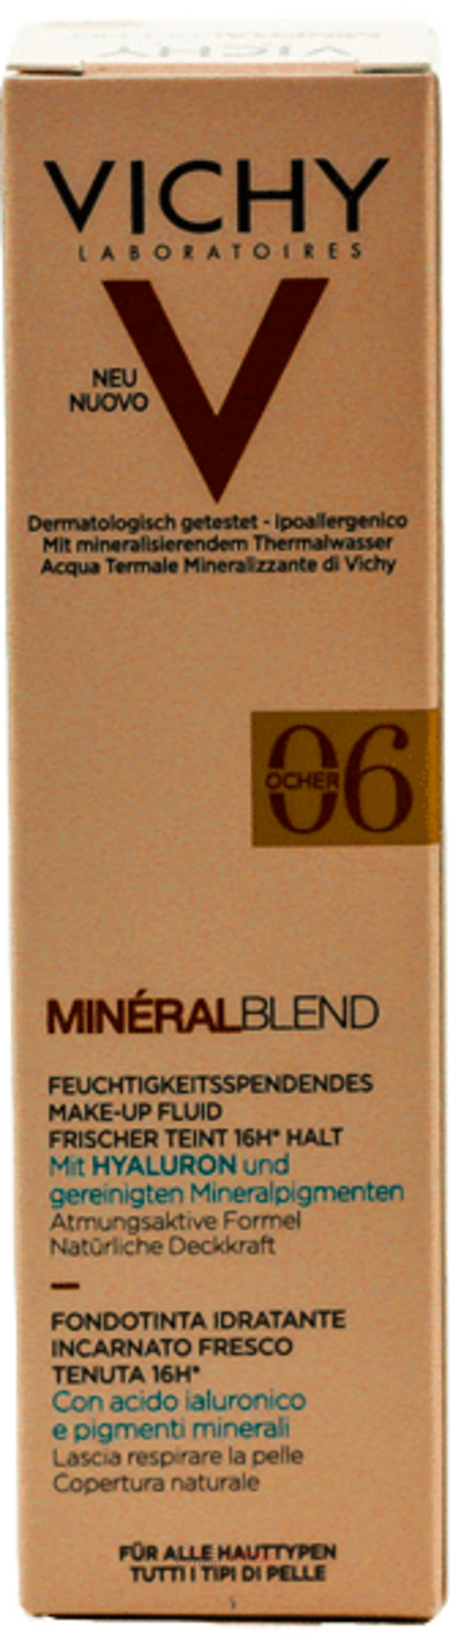 VICHY Мінералбленд, зволожуючий тональний засіб для надання шкірі природнього сяючого вигляду, відтінок 06